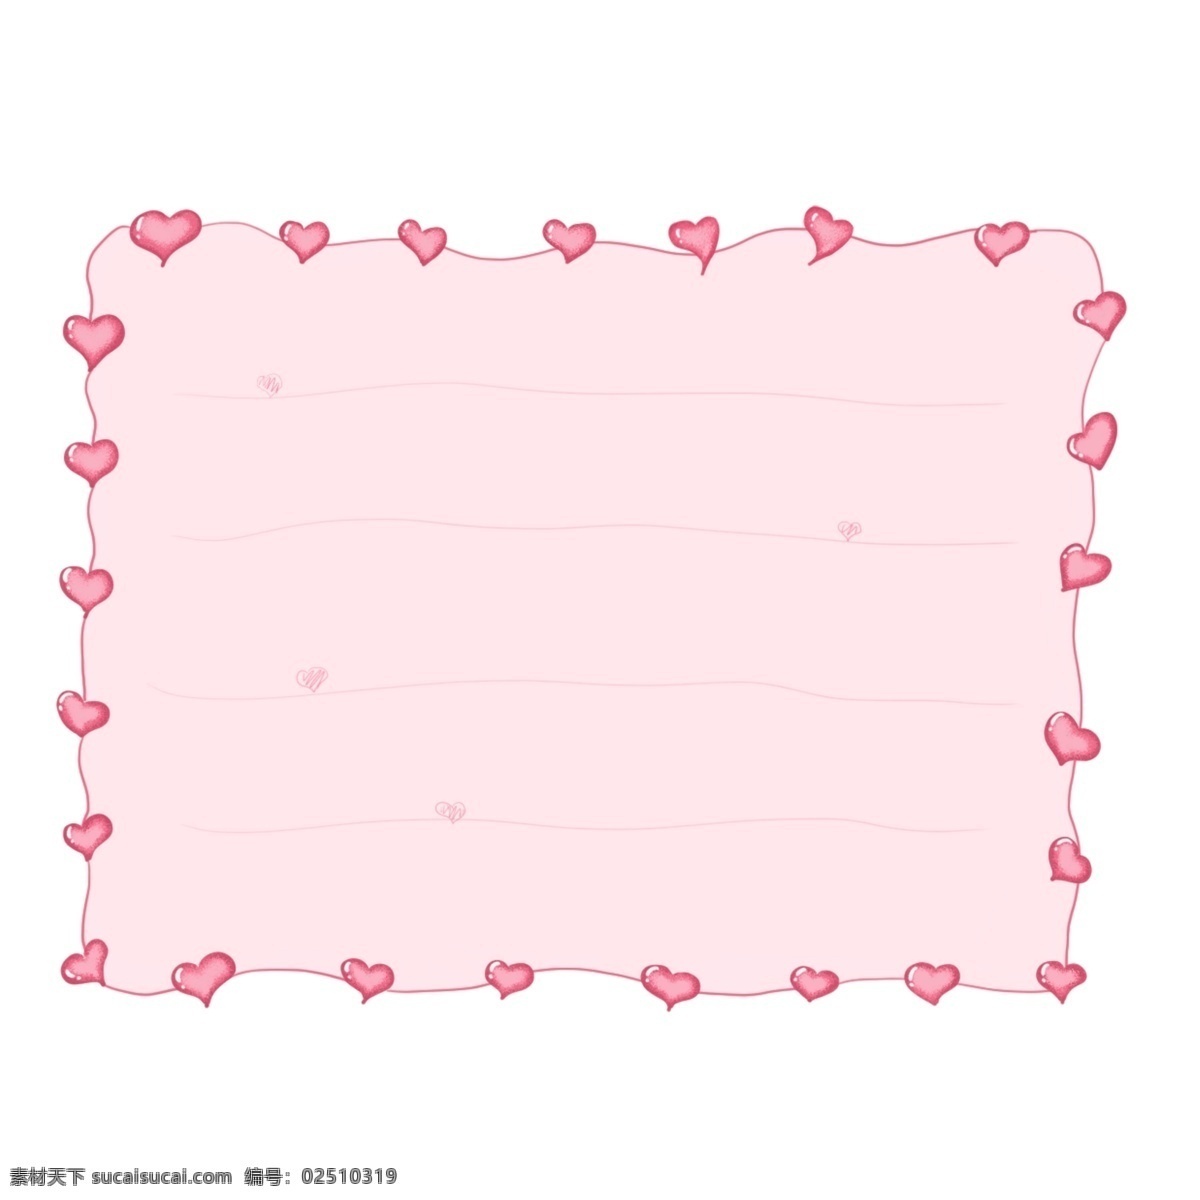 粉色系列信纸 粉色 信纸 桃心 浪漫信纸 信纸素材